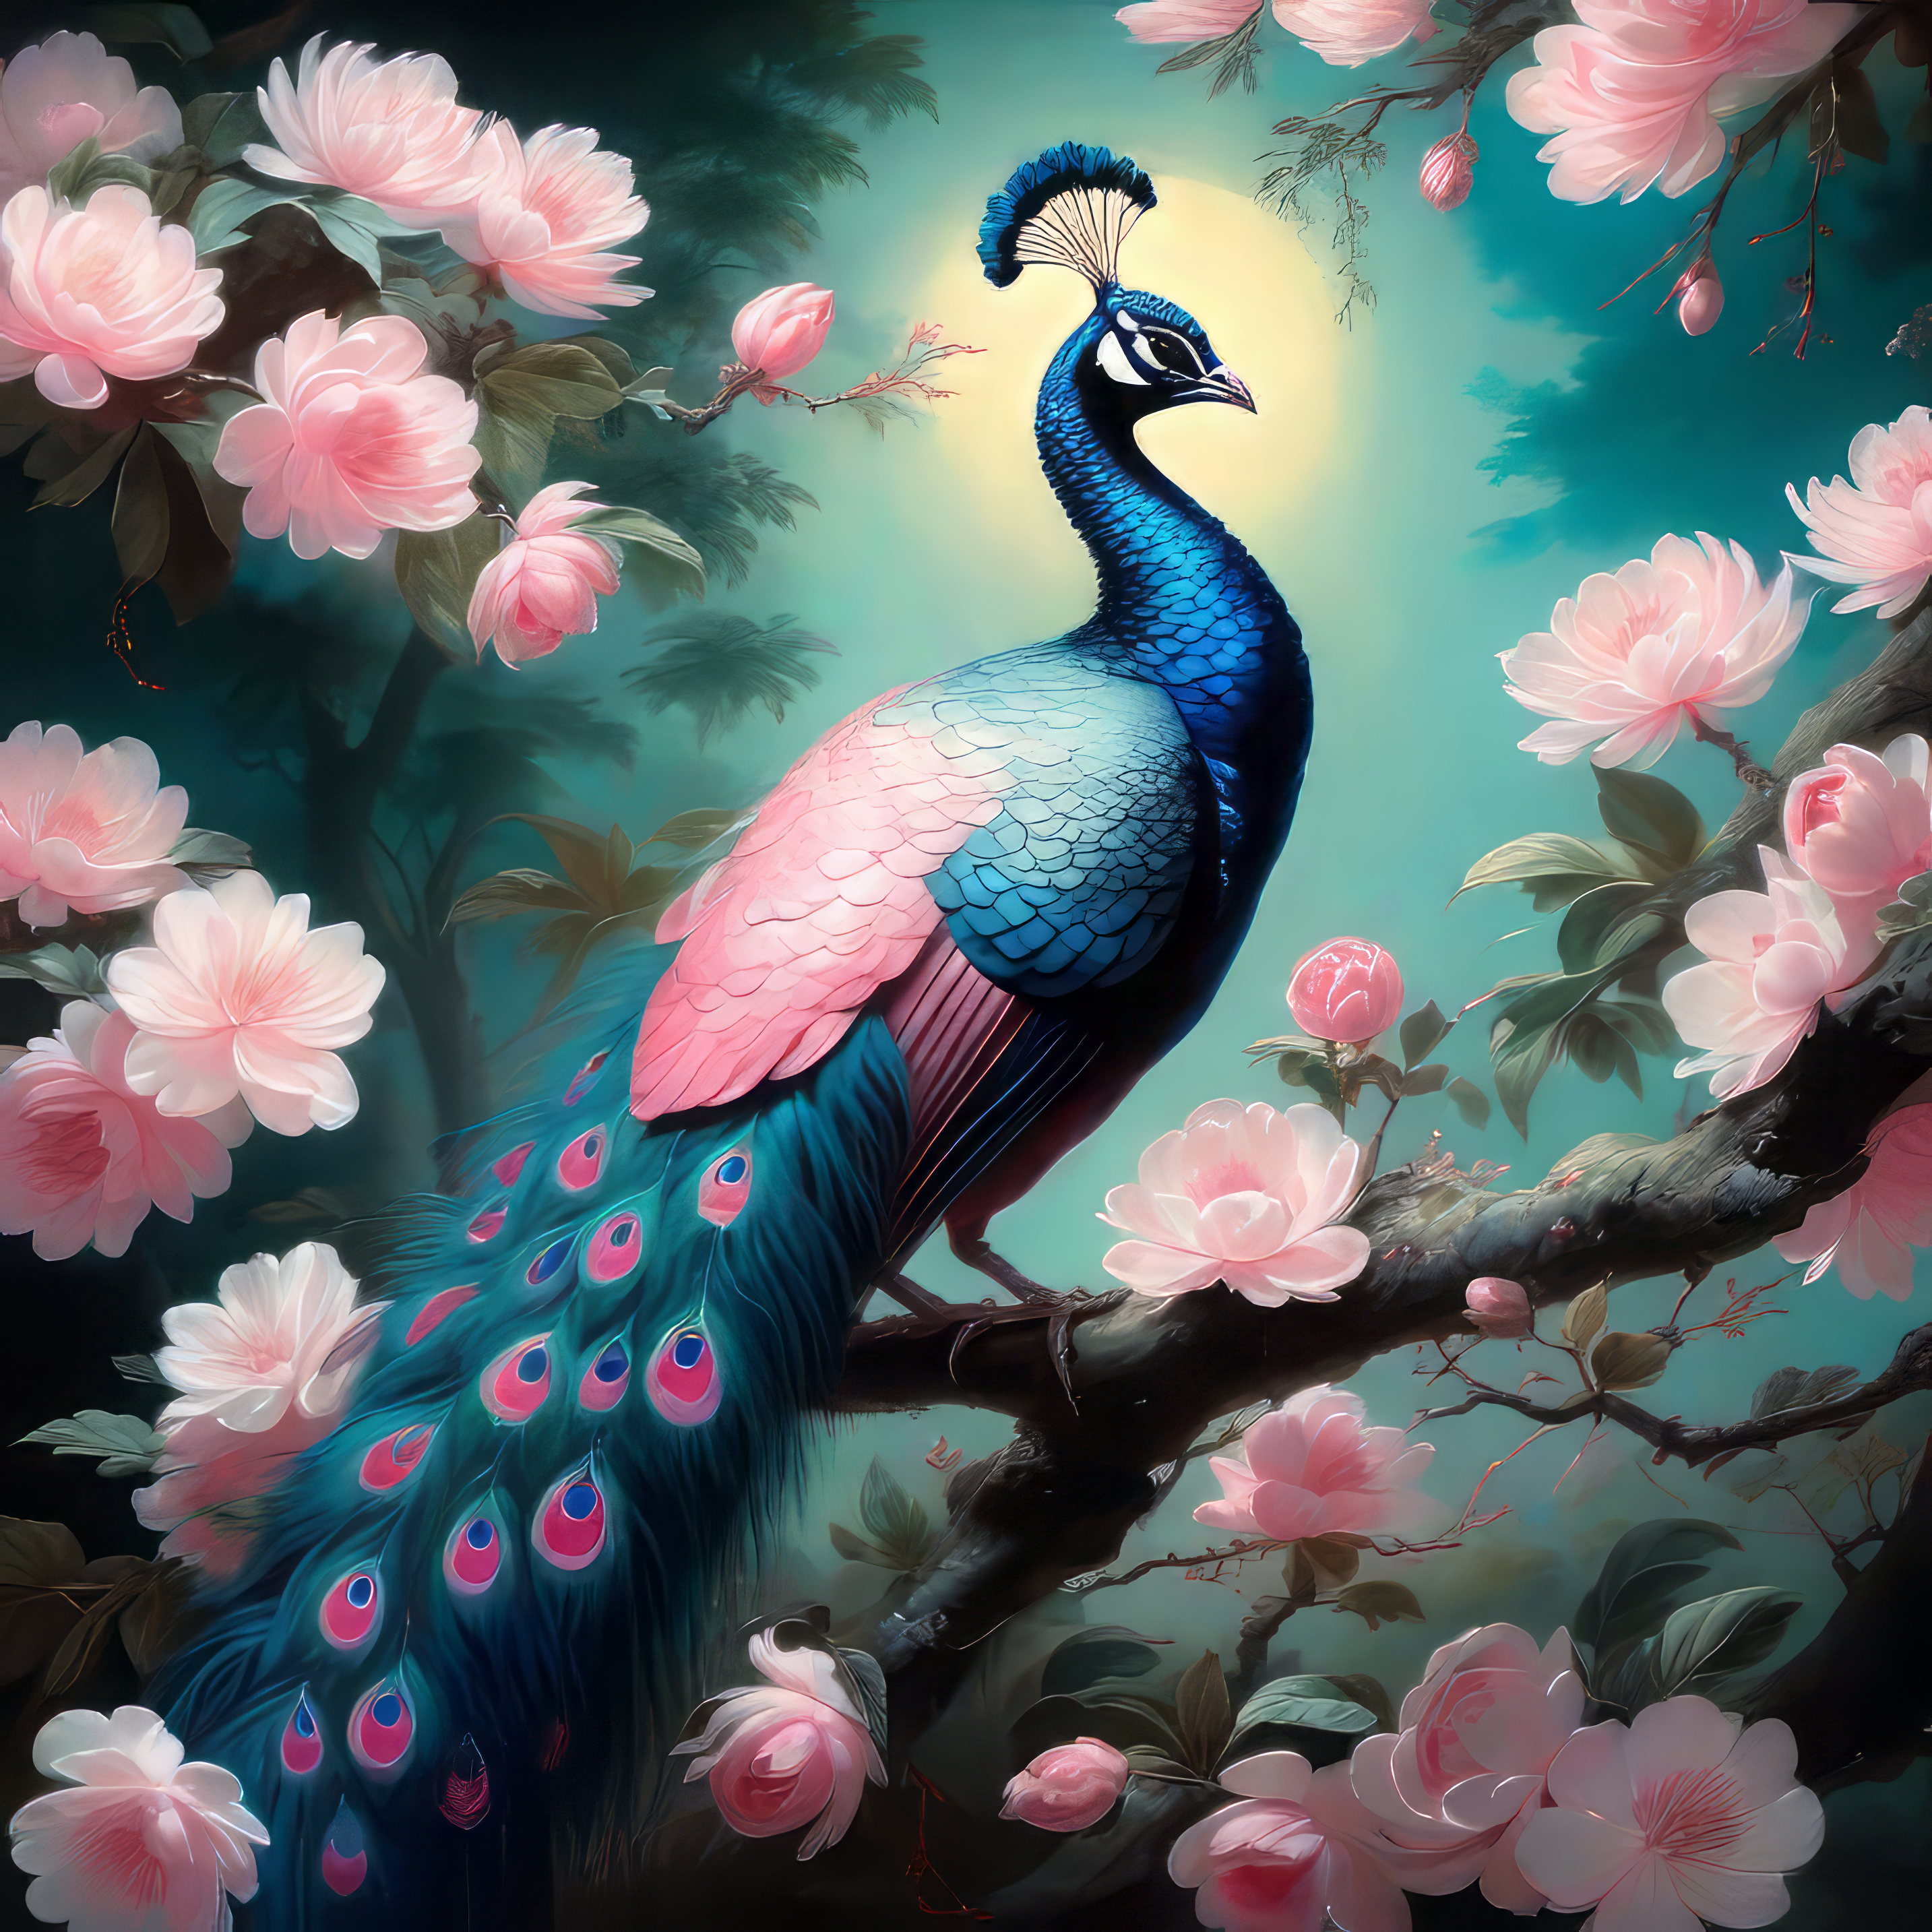 美しくかっこいい青い孔雀と花々が咲く幻想的で綺麗な風景のスマホ壁紙